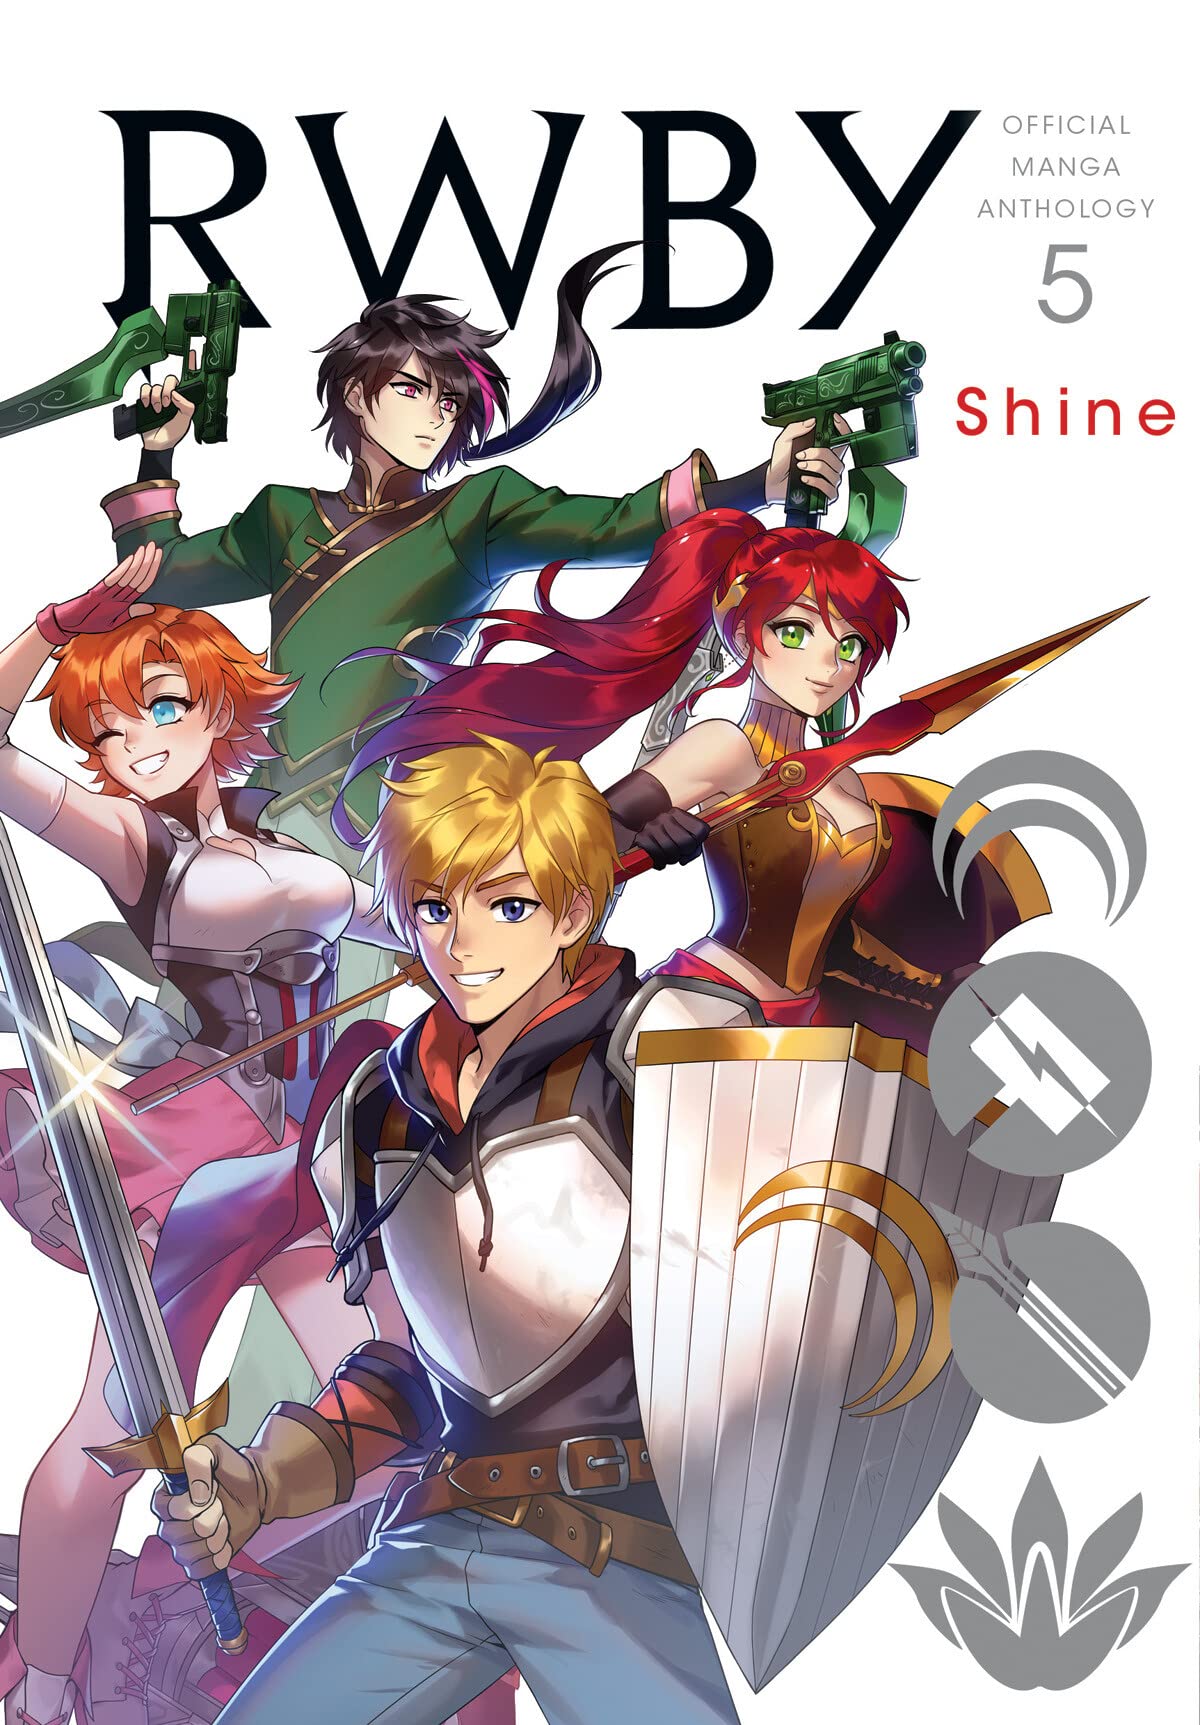 RWBY: Official Manga Anthology, Vol. 5: Shine (5)